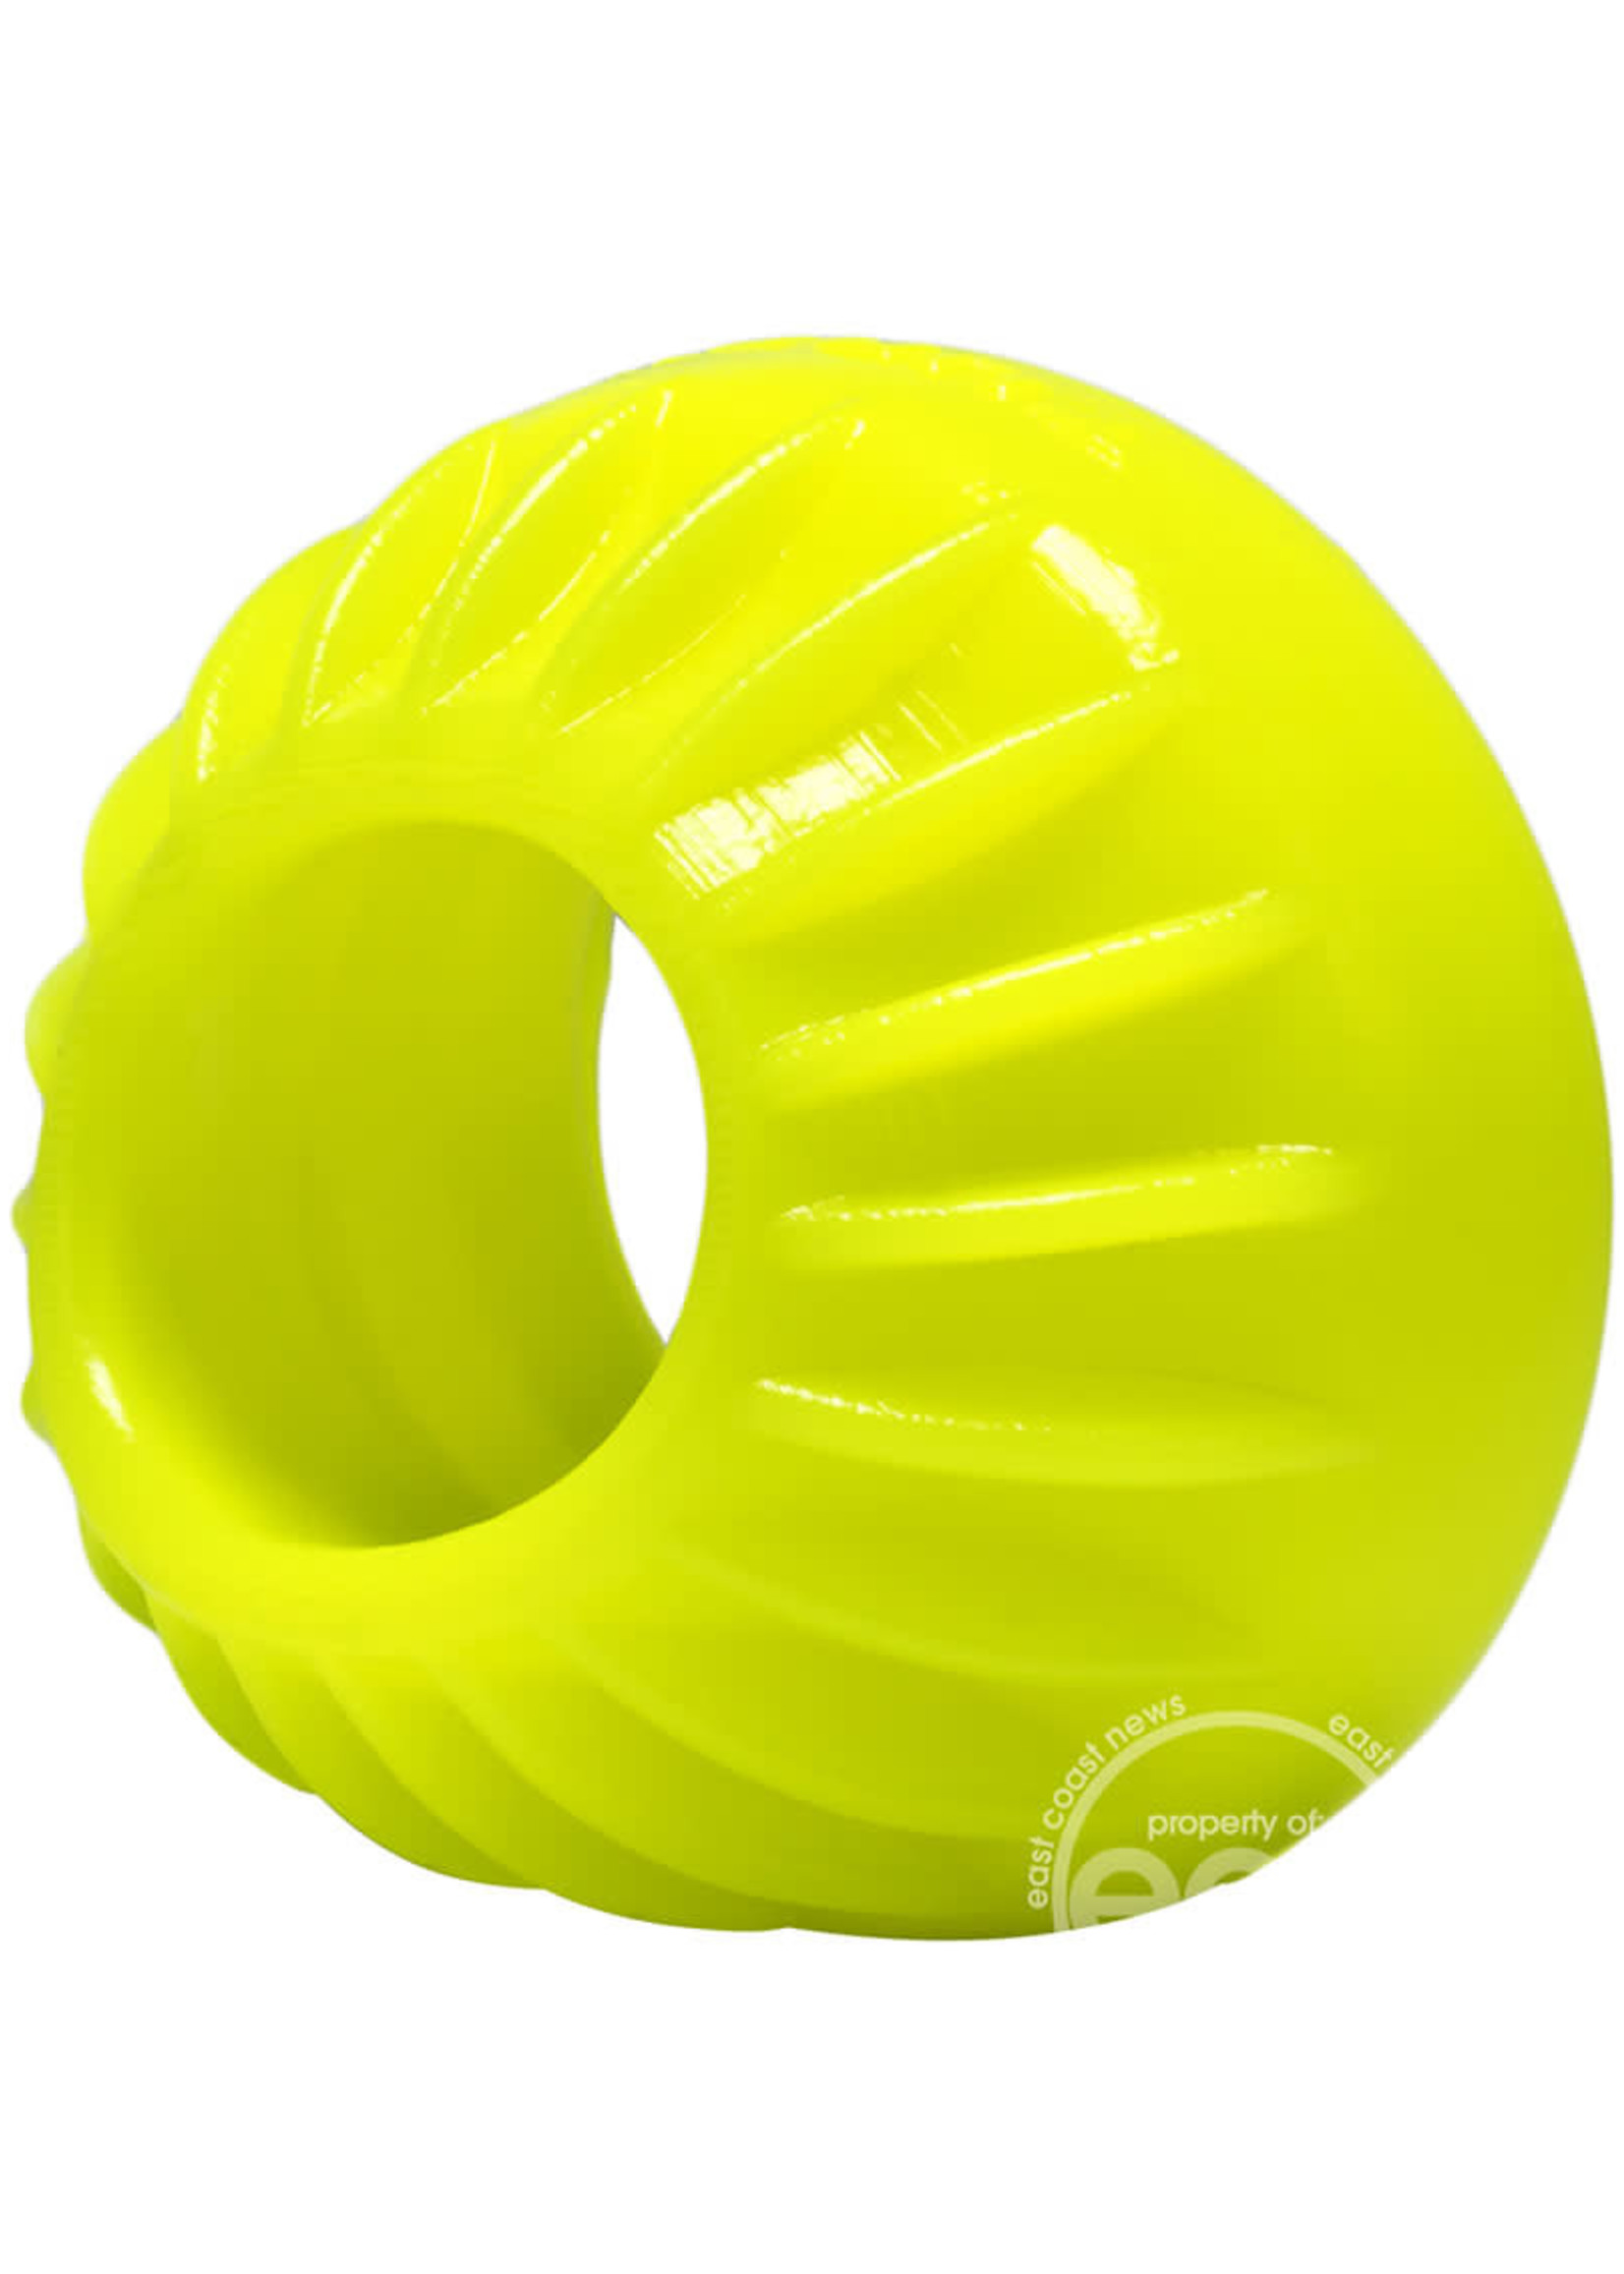 OX Balls Turbine Silicone Cock Ring